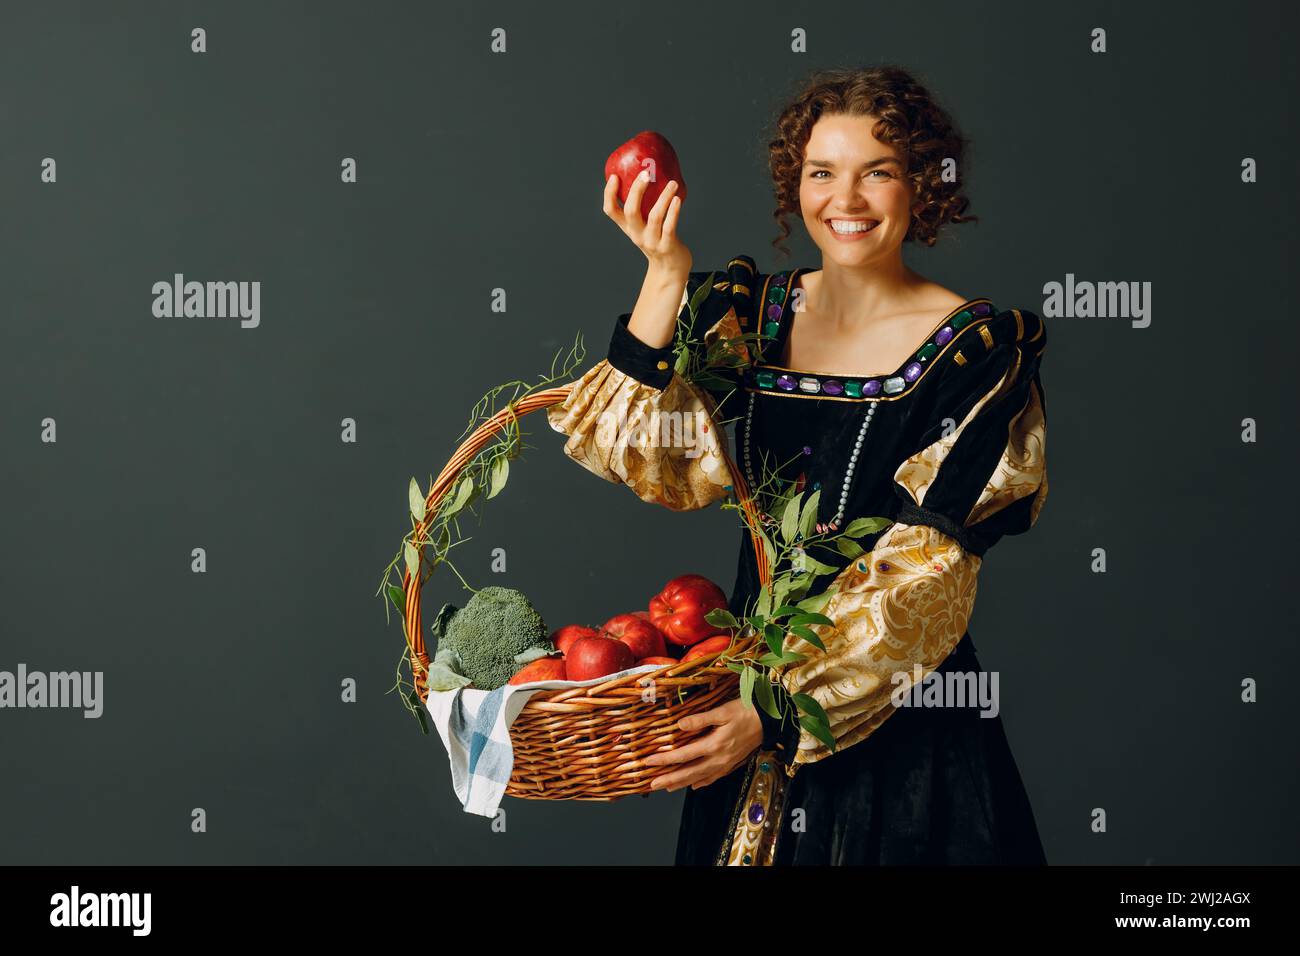 Porträt einer jungen erwachsenen Frau in einem mittelalterlichen Kleid, die einen Korb mit Gemüse und Früchten hält. Ernte und gesunder Foo Stockfoto